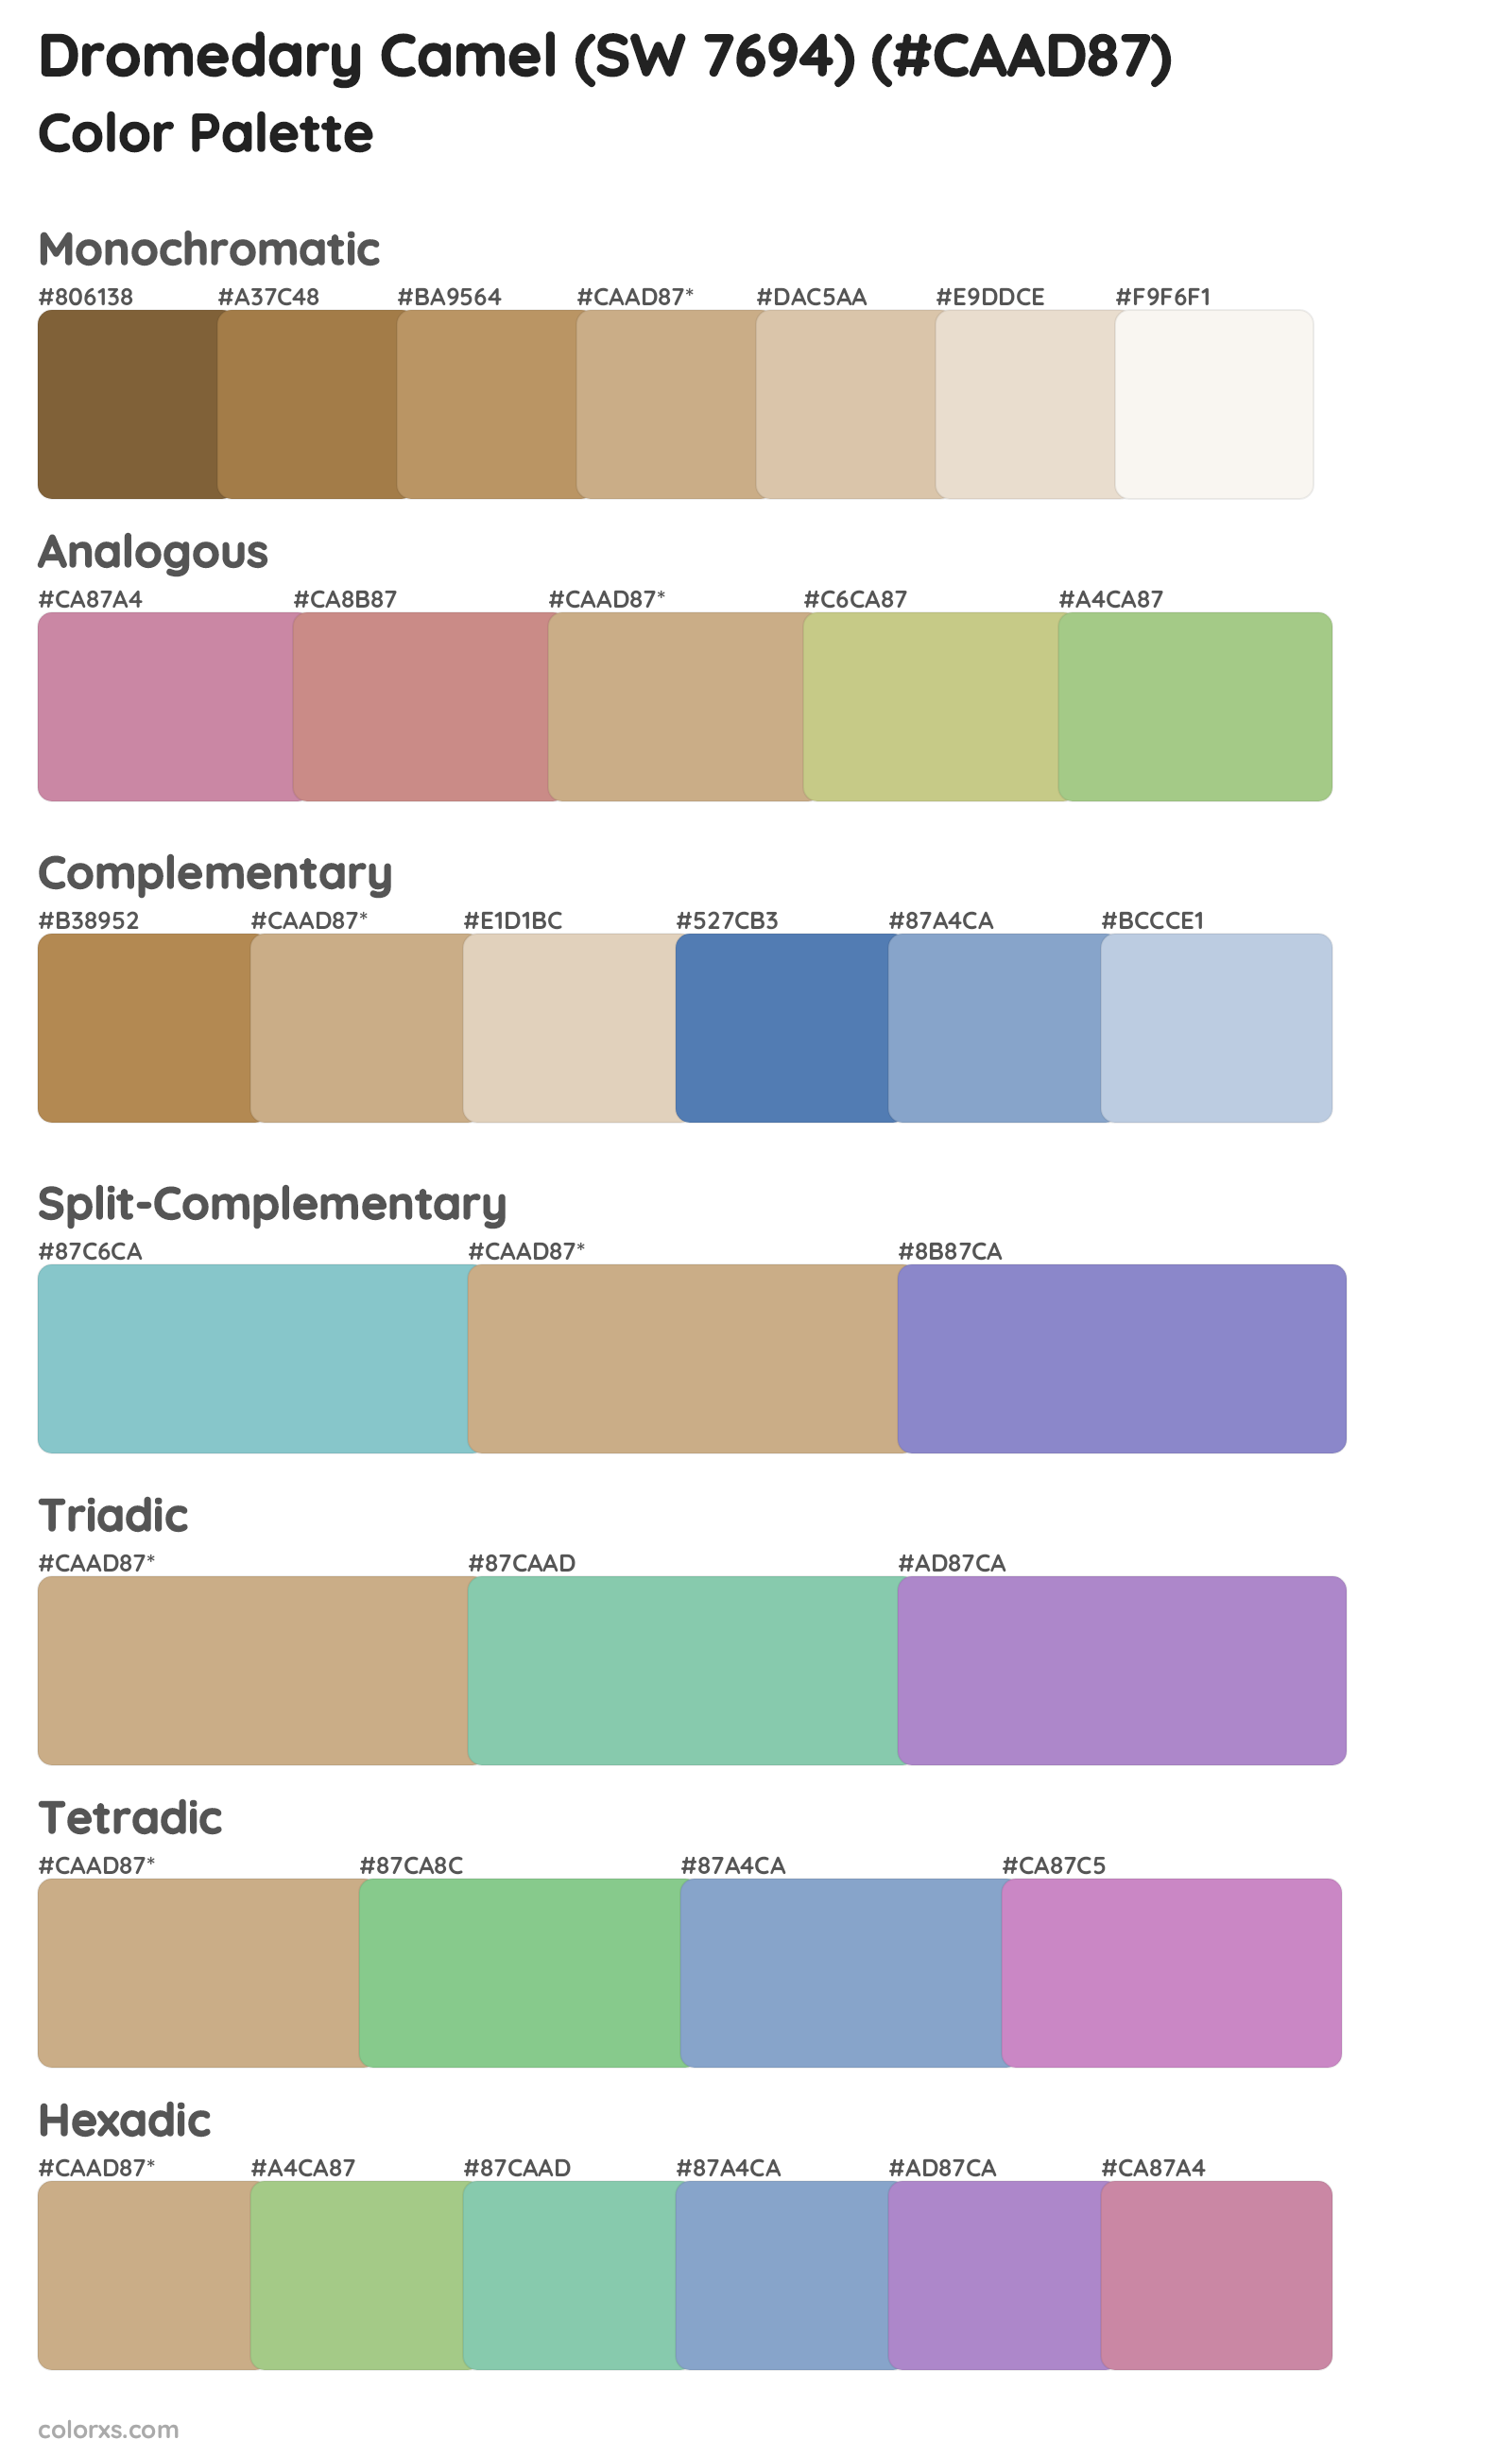 Dromedary Camel (SW 7694) Color Scheme Palettes